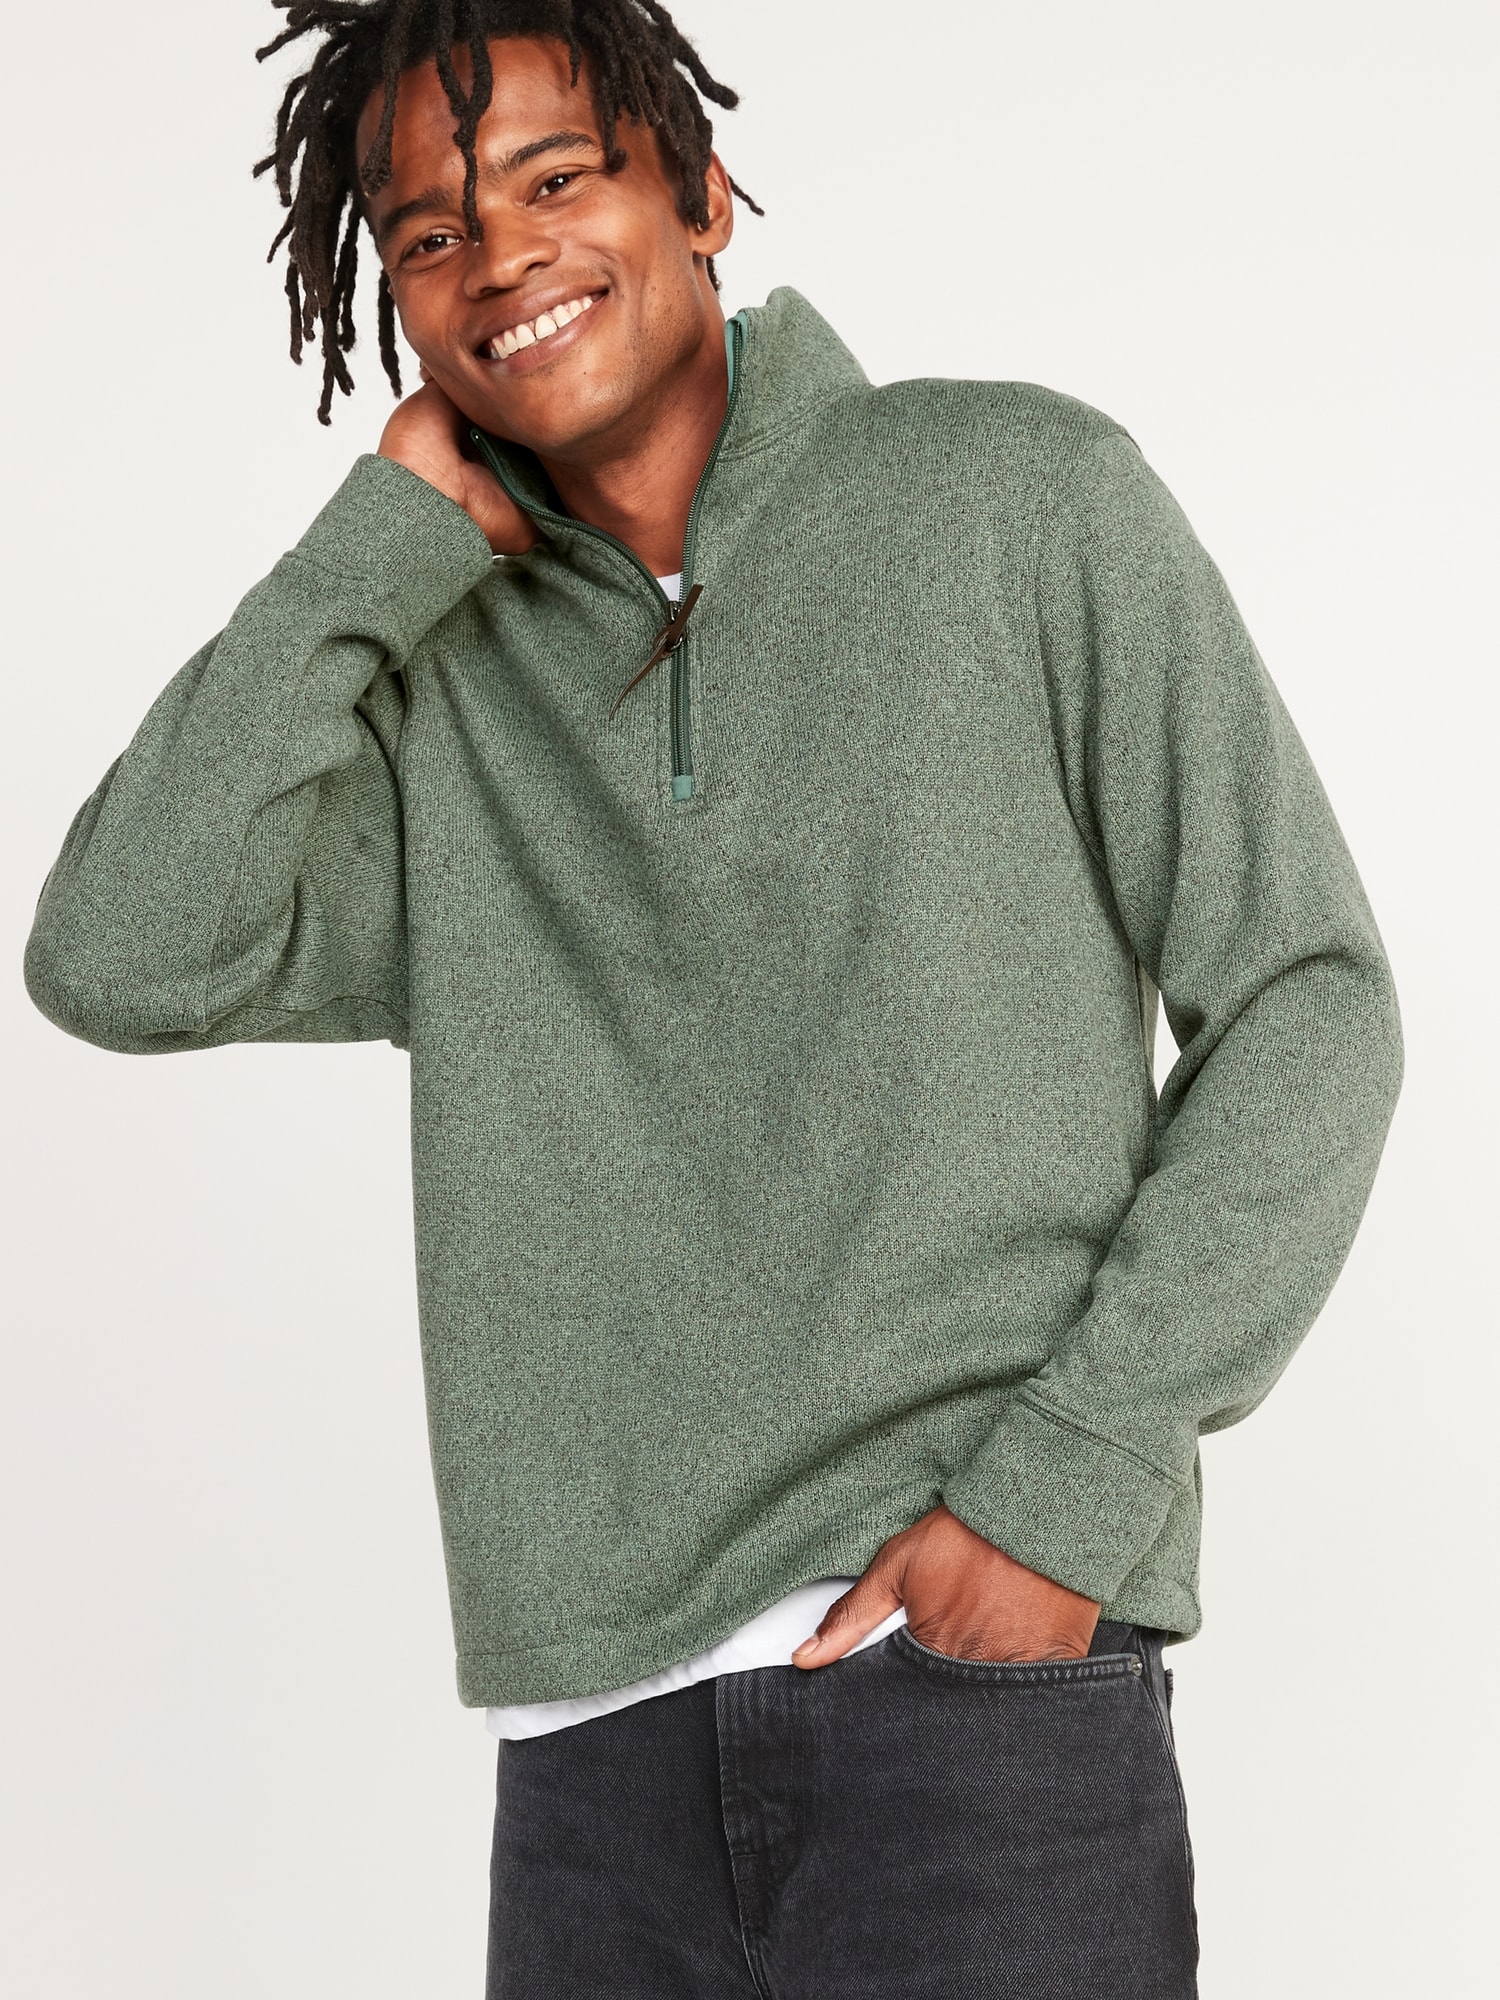 Sweater-Fleece Mock-Neck Quarter Zip Sweatshirt